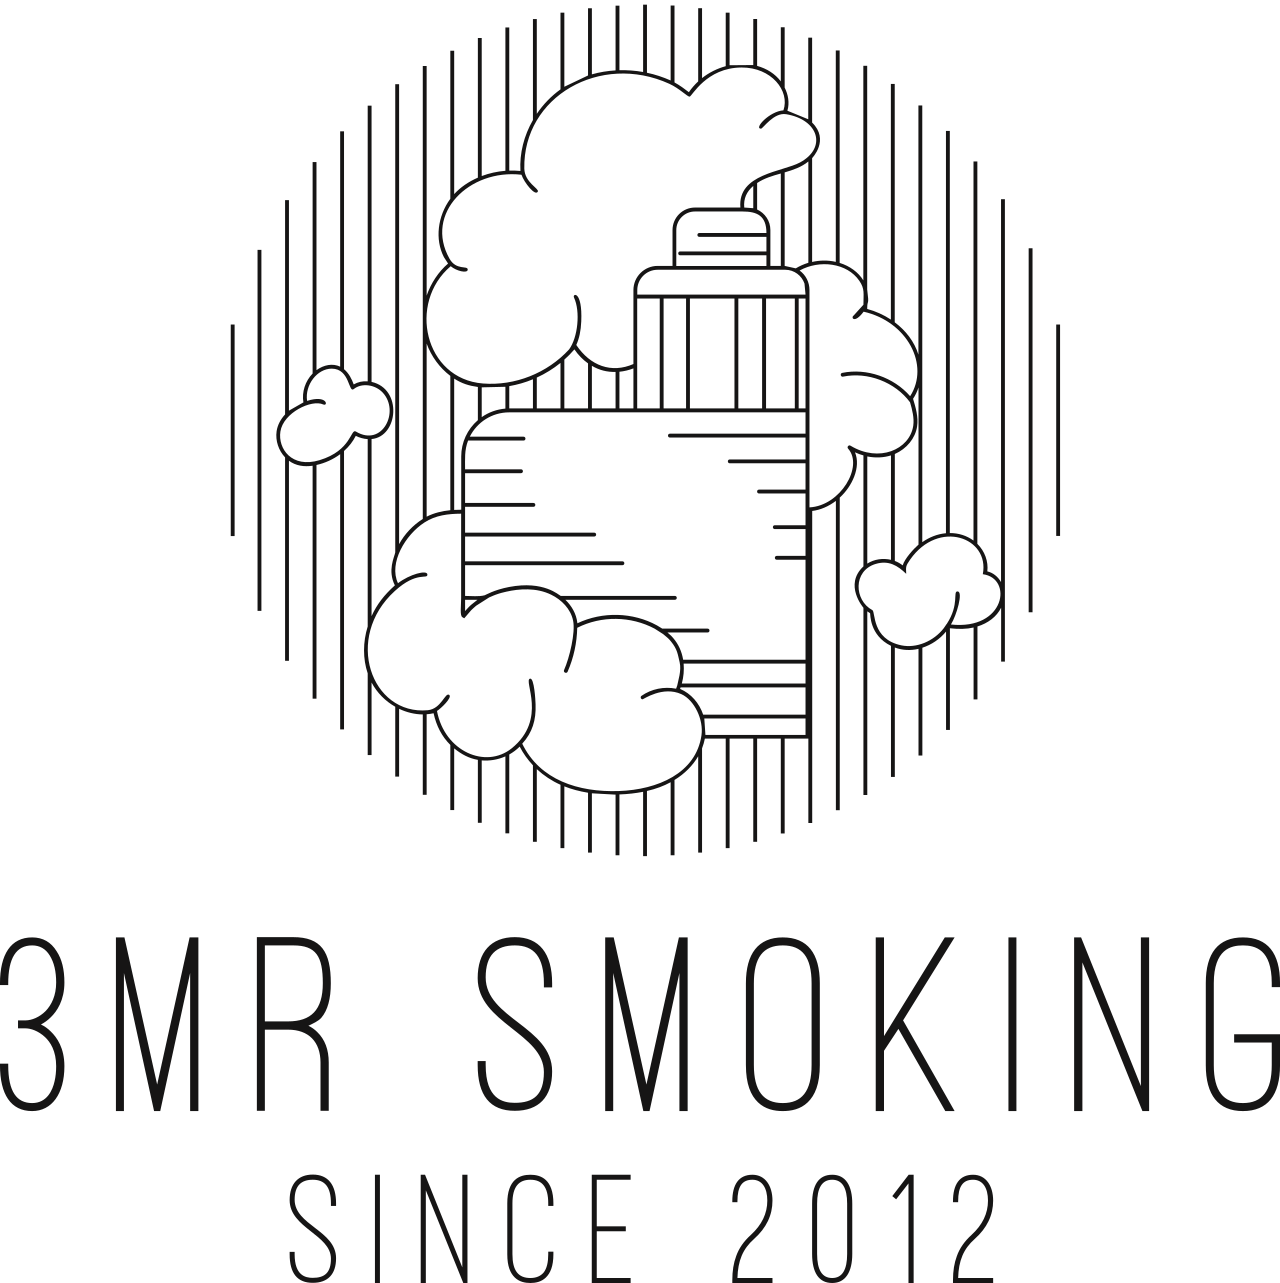 3mr Smoking's web page